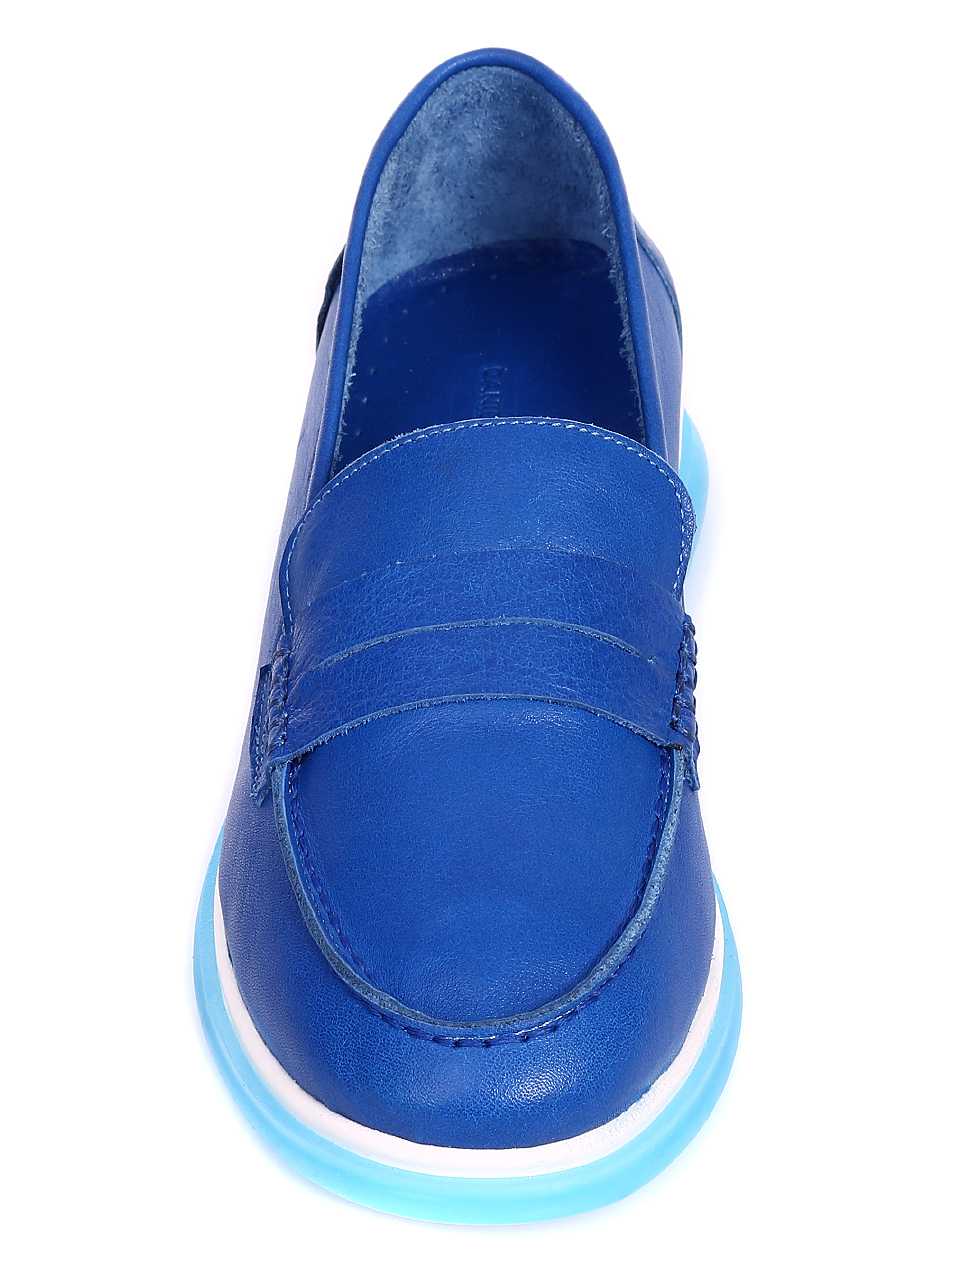 Ежедневни дамски обувки от естествена кожа 3AT-20486 blue